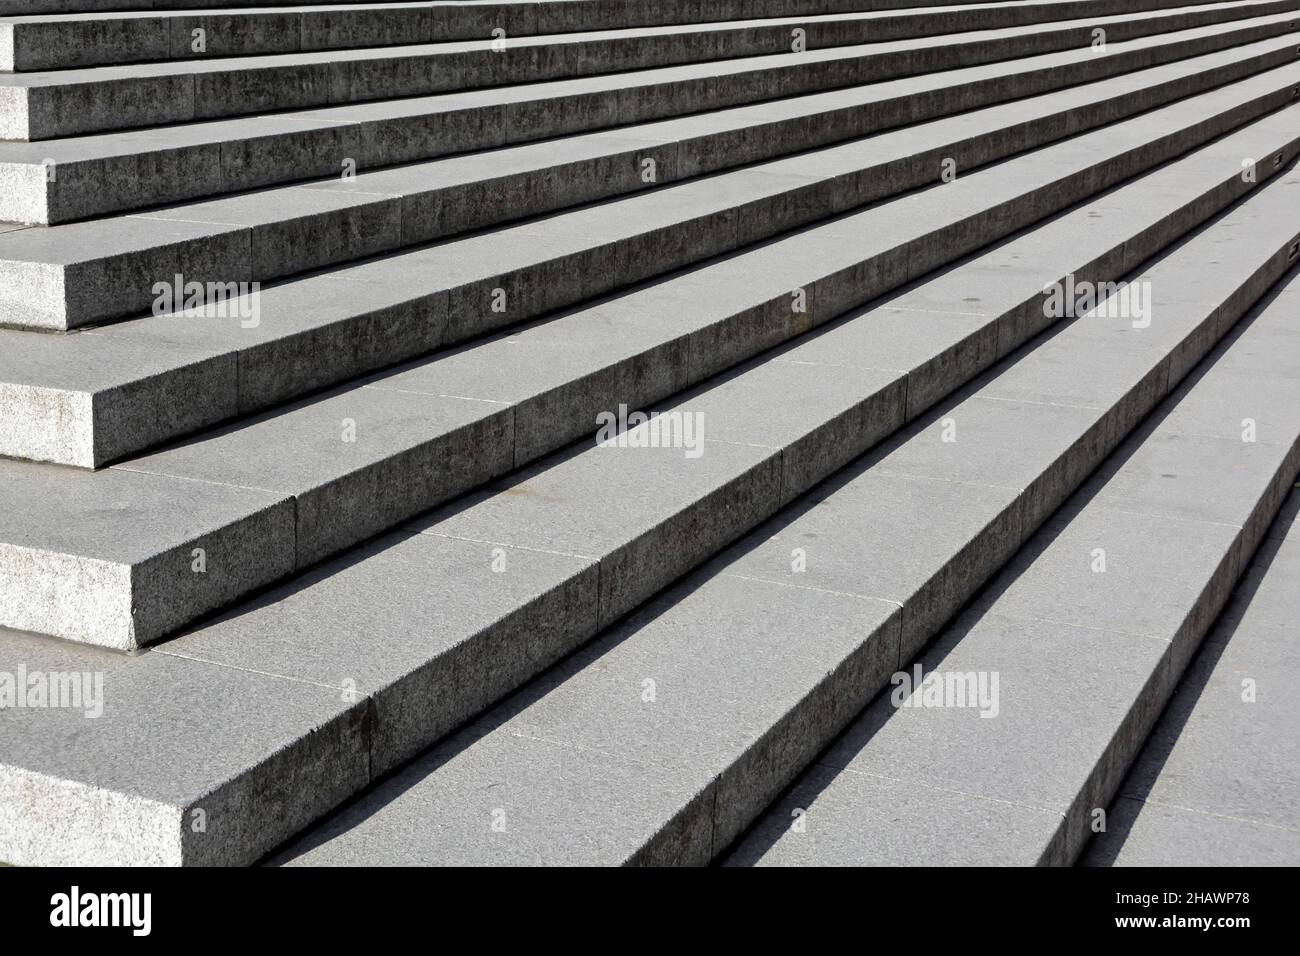 Lange gerade zurücktretende Linien breite, saubere Steintreppen bei Sonnenschein und Steigleitungen in Schattenstufen Konzeptbild, um in der City of London, England, nach oben zu klettern Stockfoto